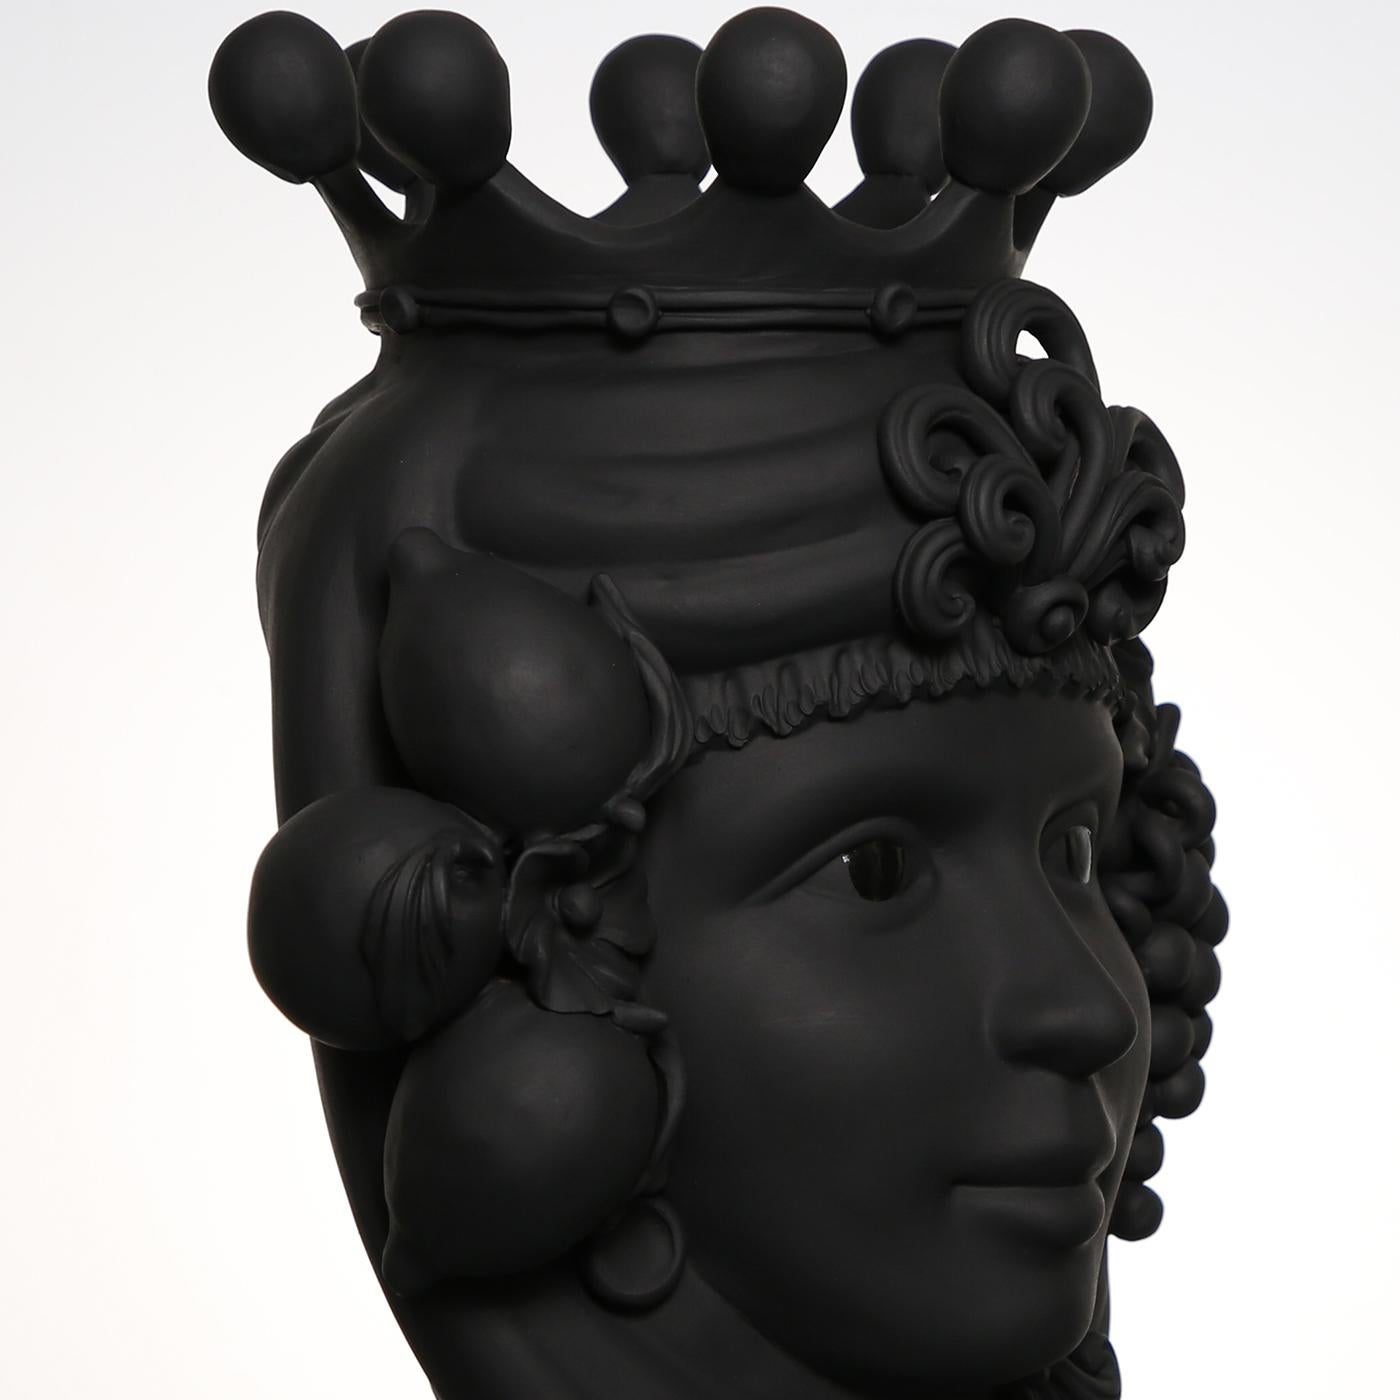 Ce vase anthropomorphe est entièrement réalisé à la main et peint dans une teinte monochrome noire et mate, riche en pigments naturels et en liants résineux qui donnent une profondeur de couleur intense. Seuls les yeux sont glacés afin qu'ils